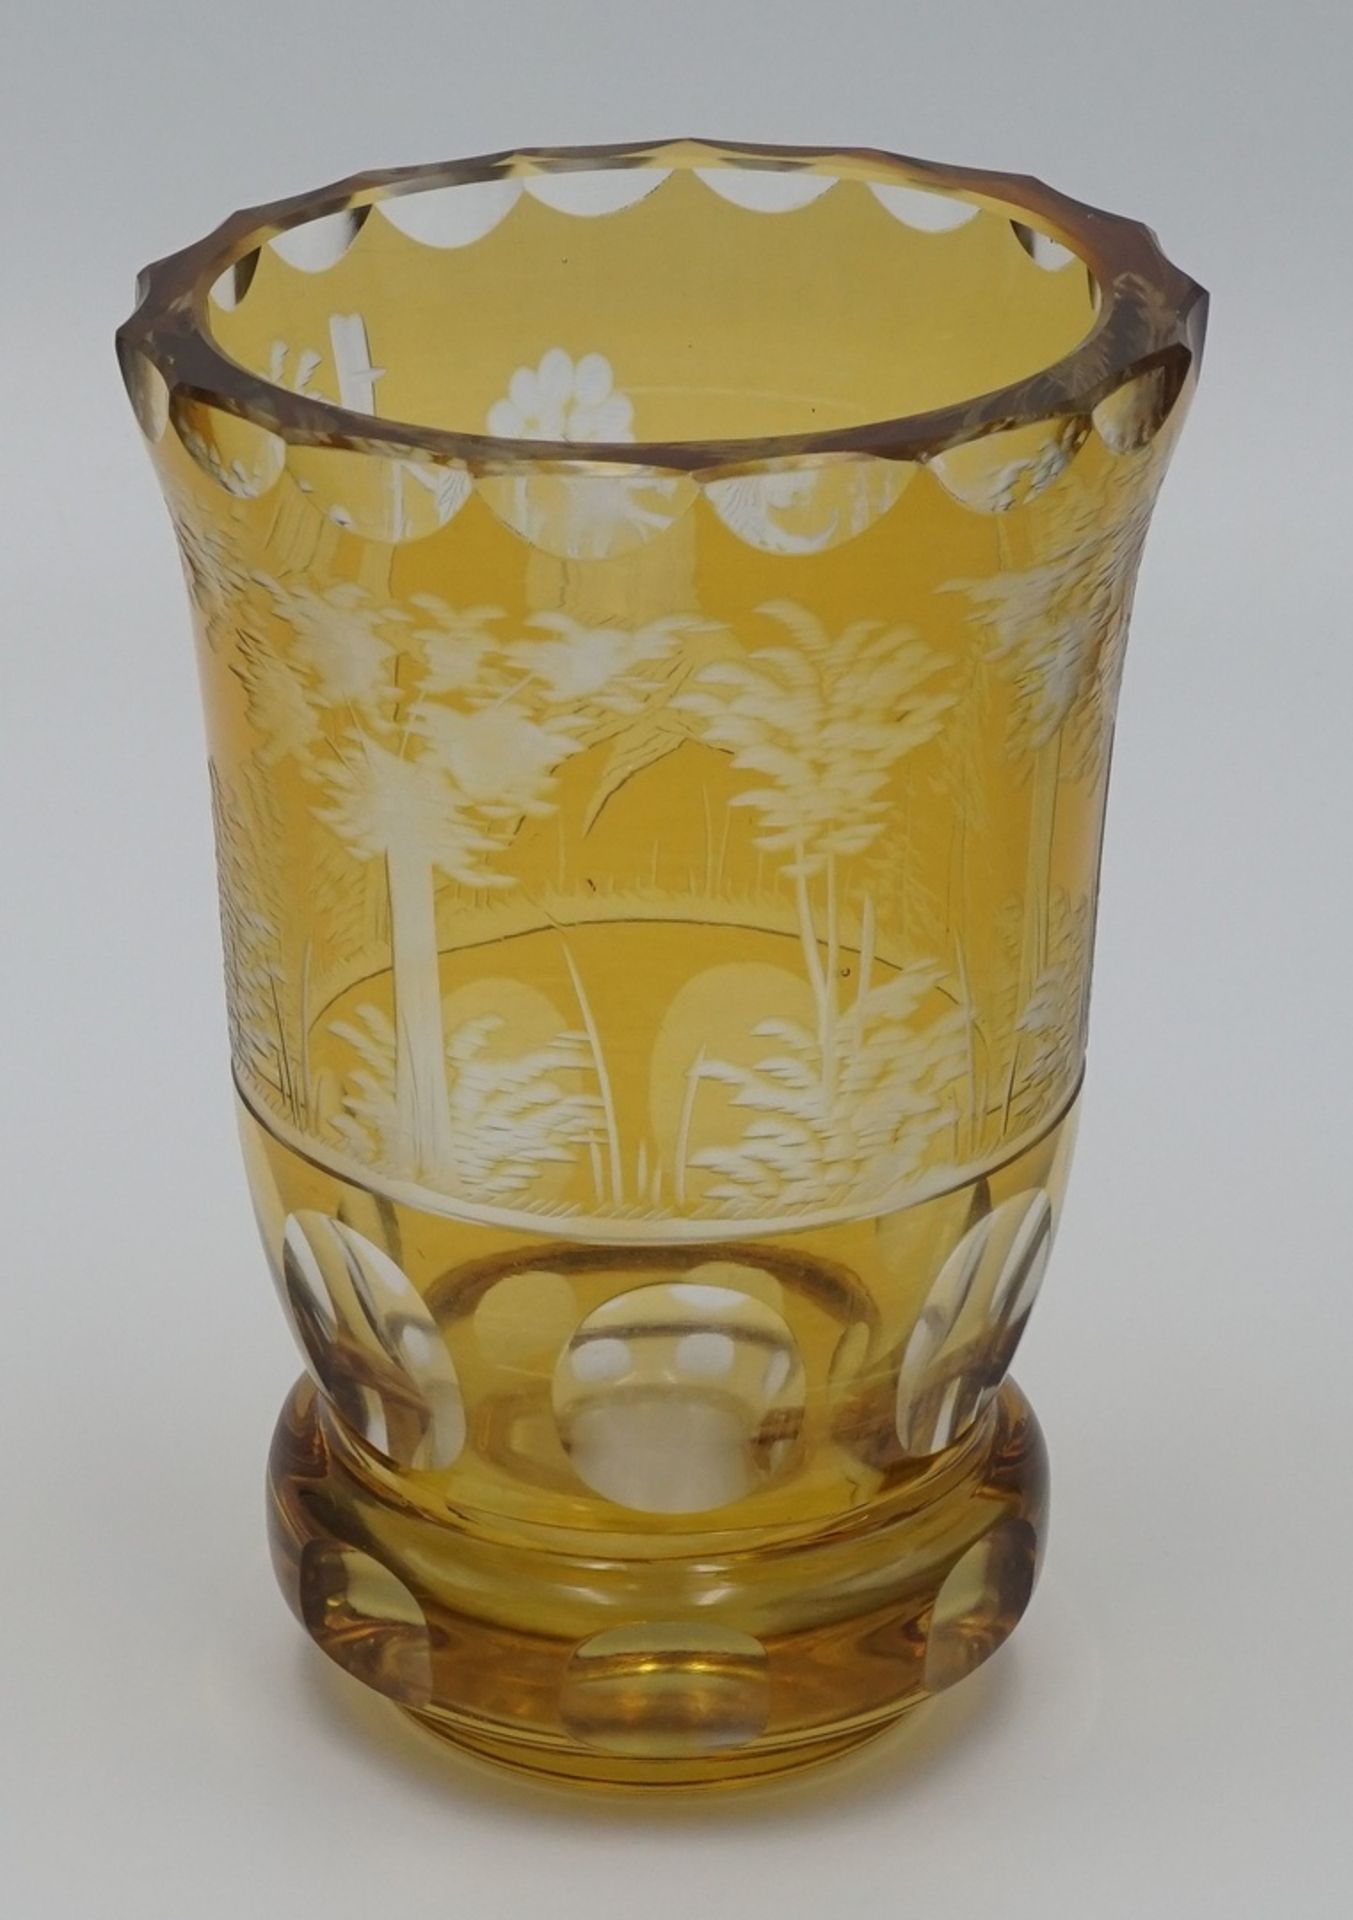 Jagdlicher Ranftbecher, 1. Hälfte 20. Jh.Kristallglas, Gelb überfangen, geschliffener Auerhahn auf - Bild 2 aus 2